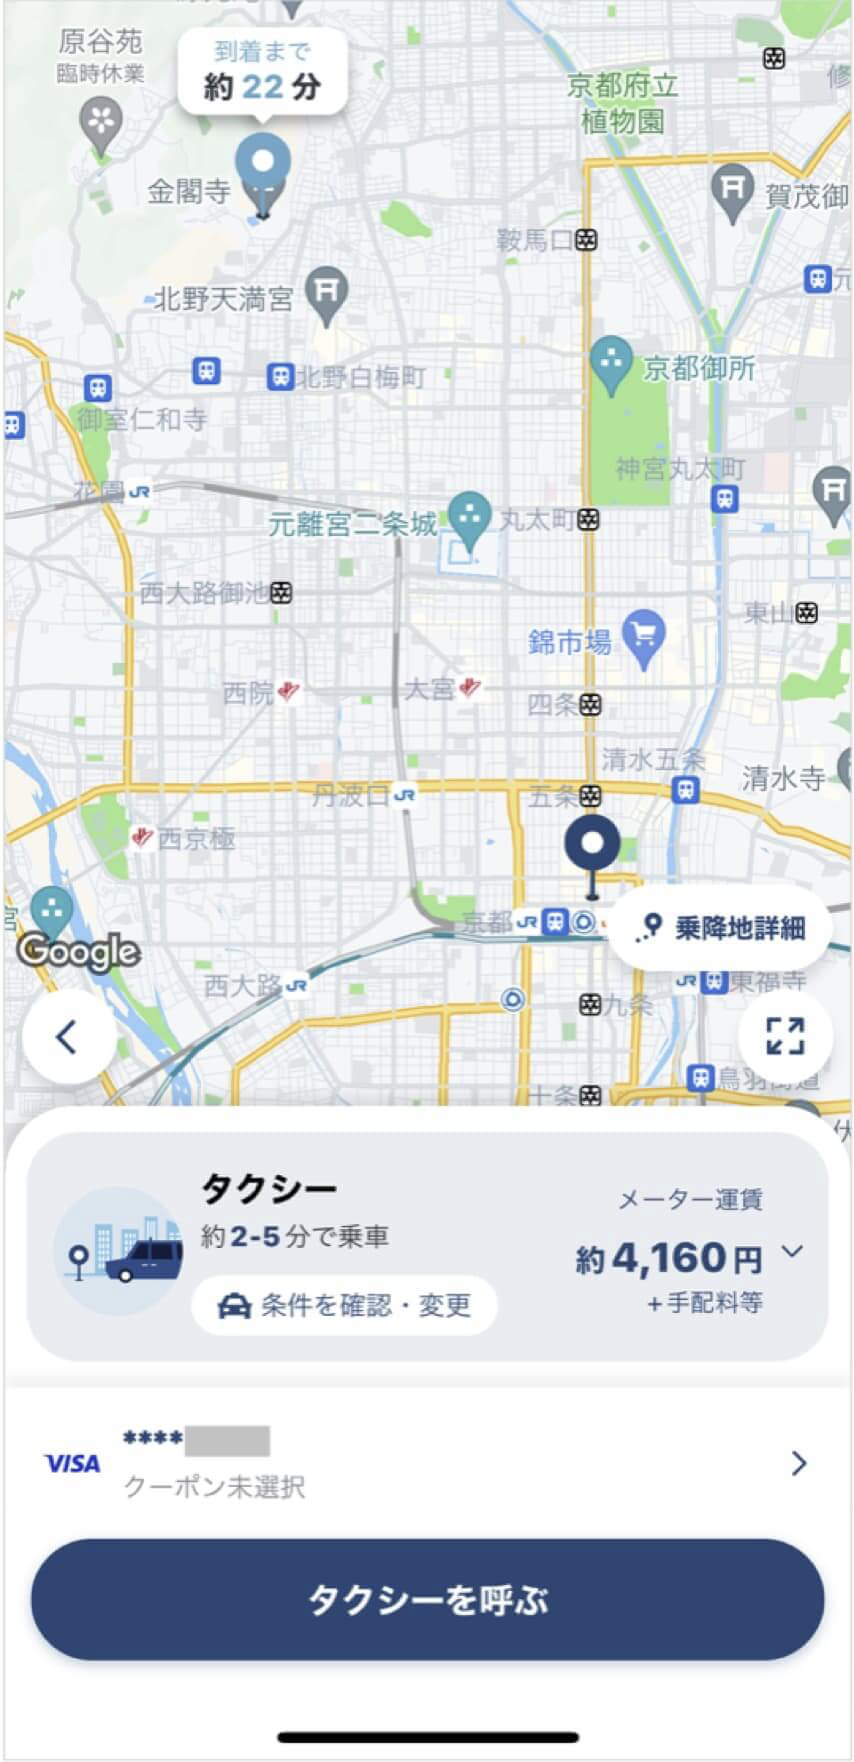 京都駅から金閣寺までのタクシー料金・所要時間まとめ